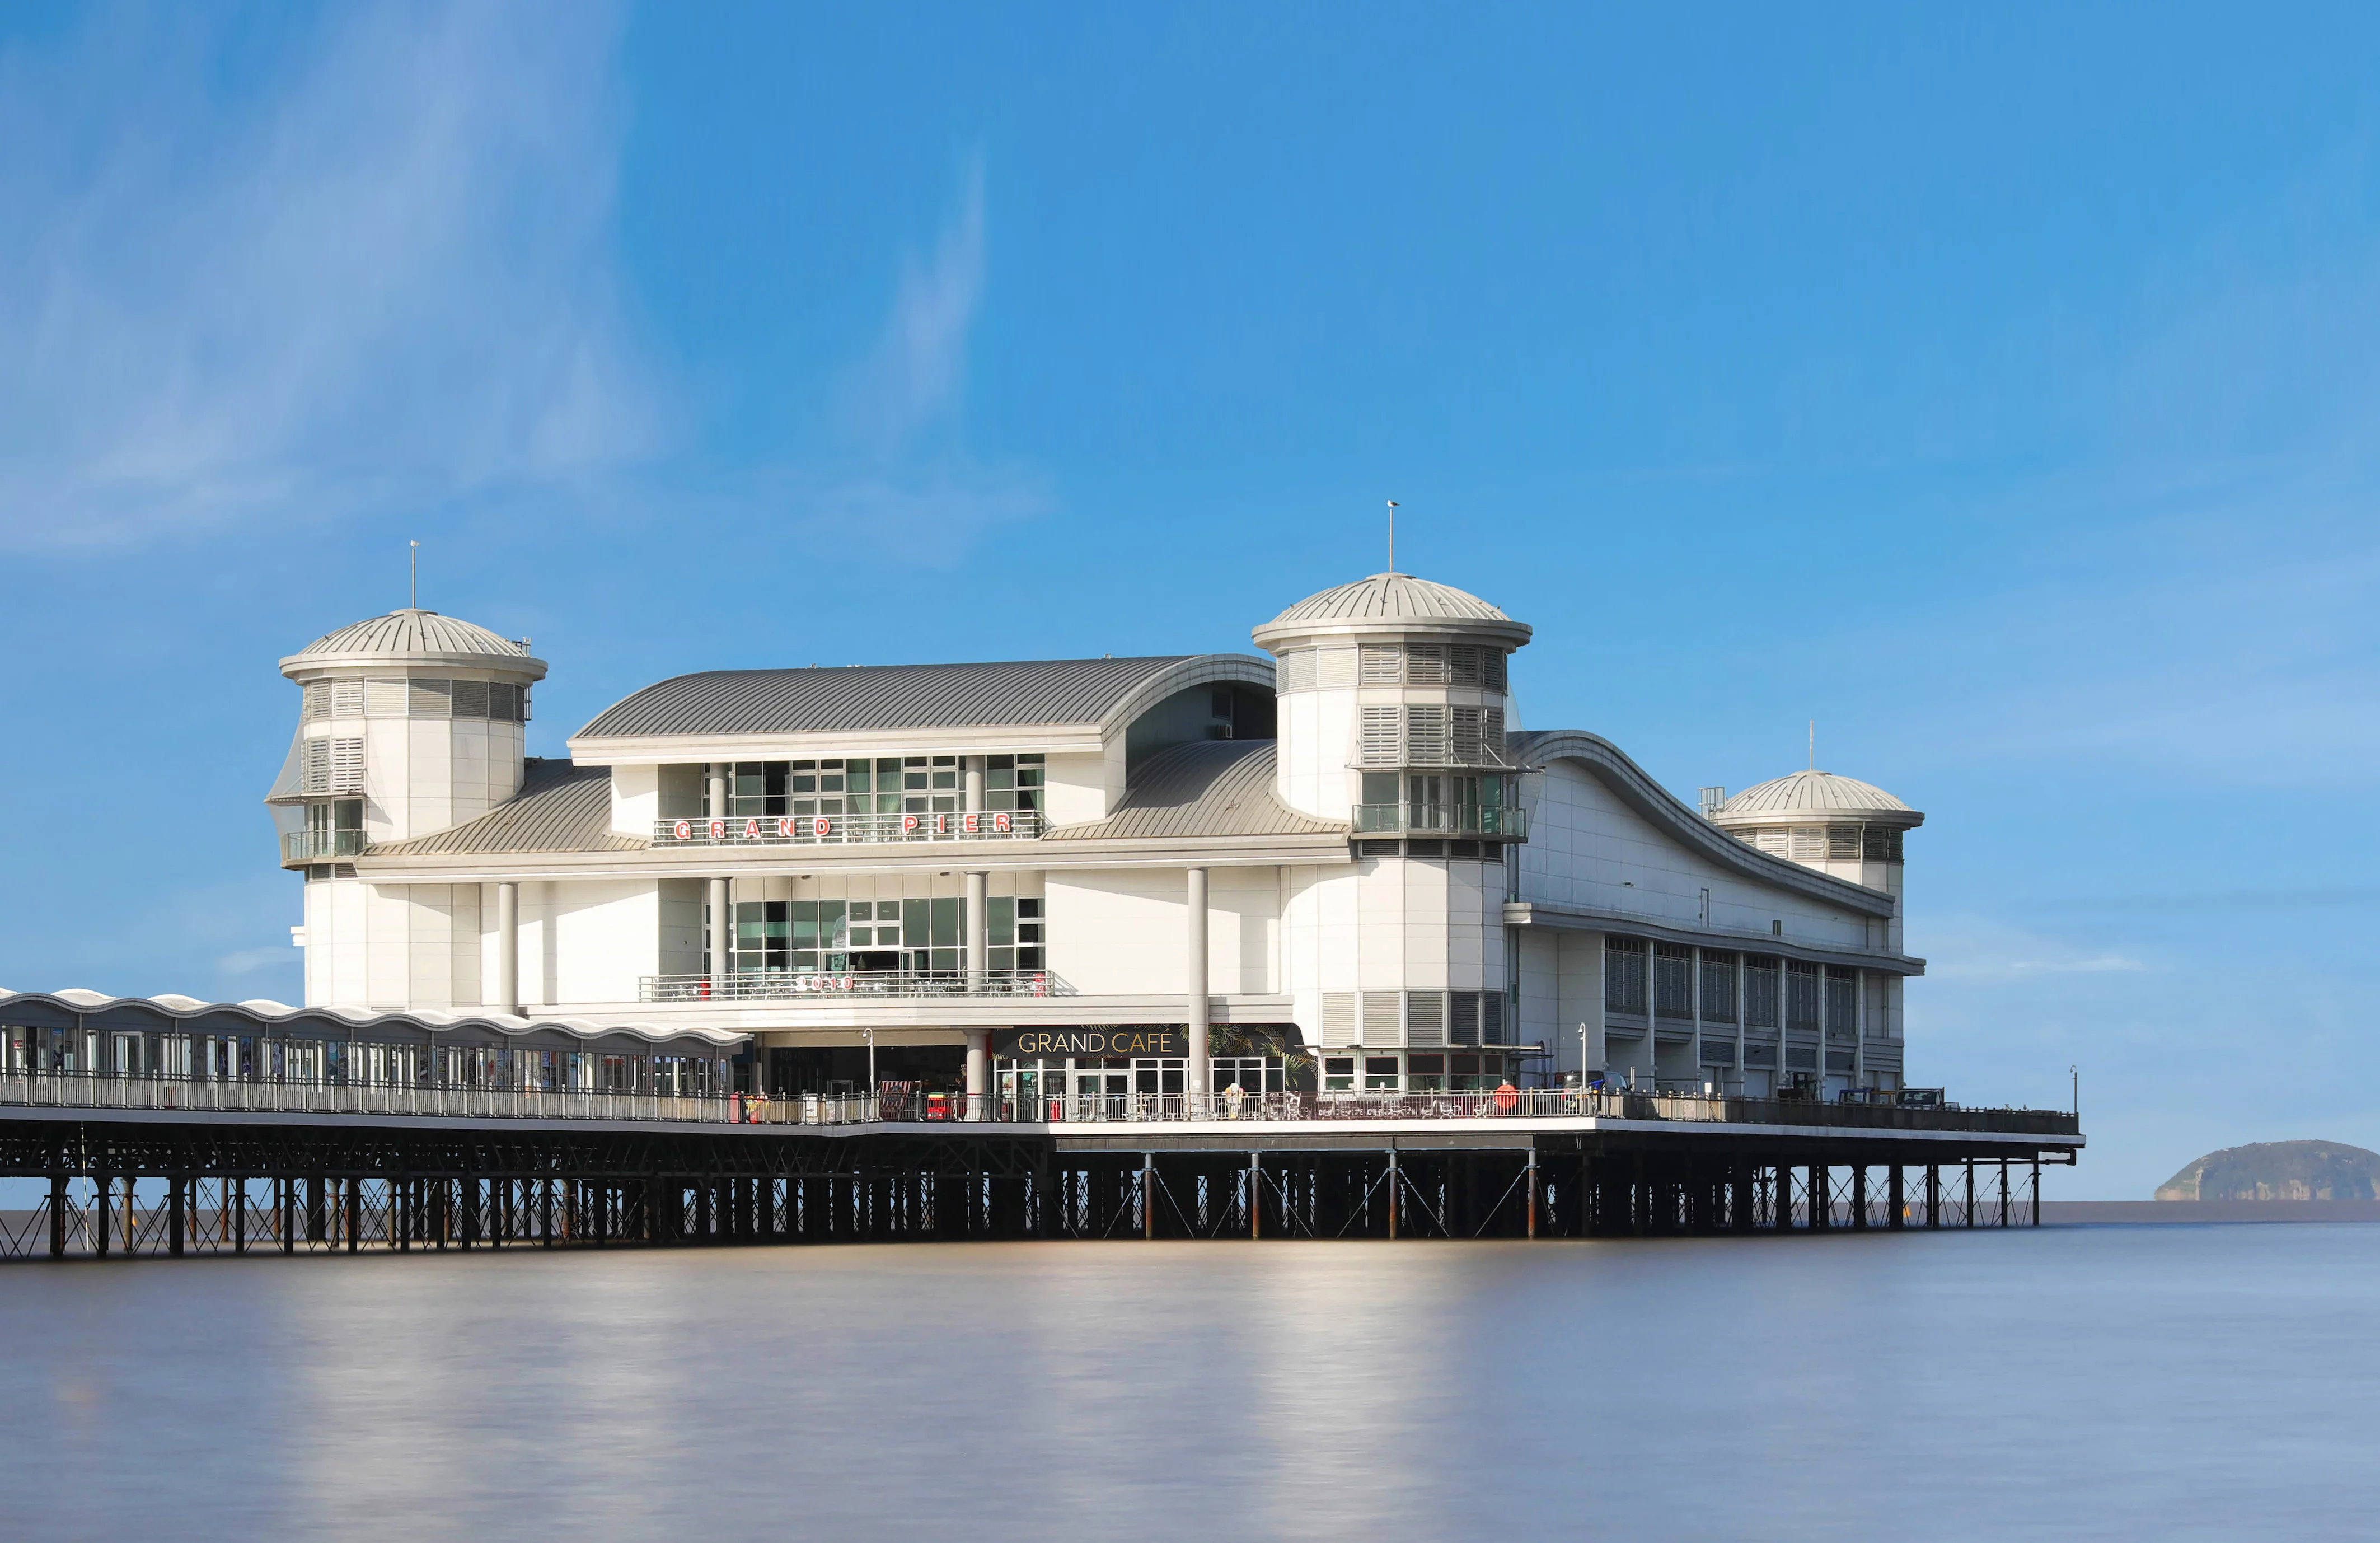 The Grand Pier Weston-super-Mare